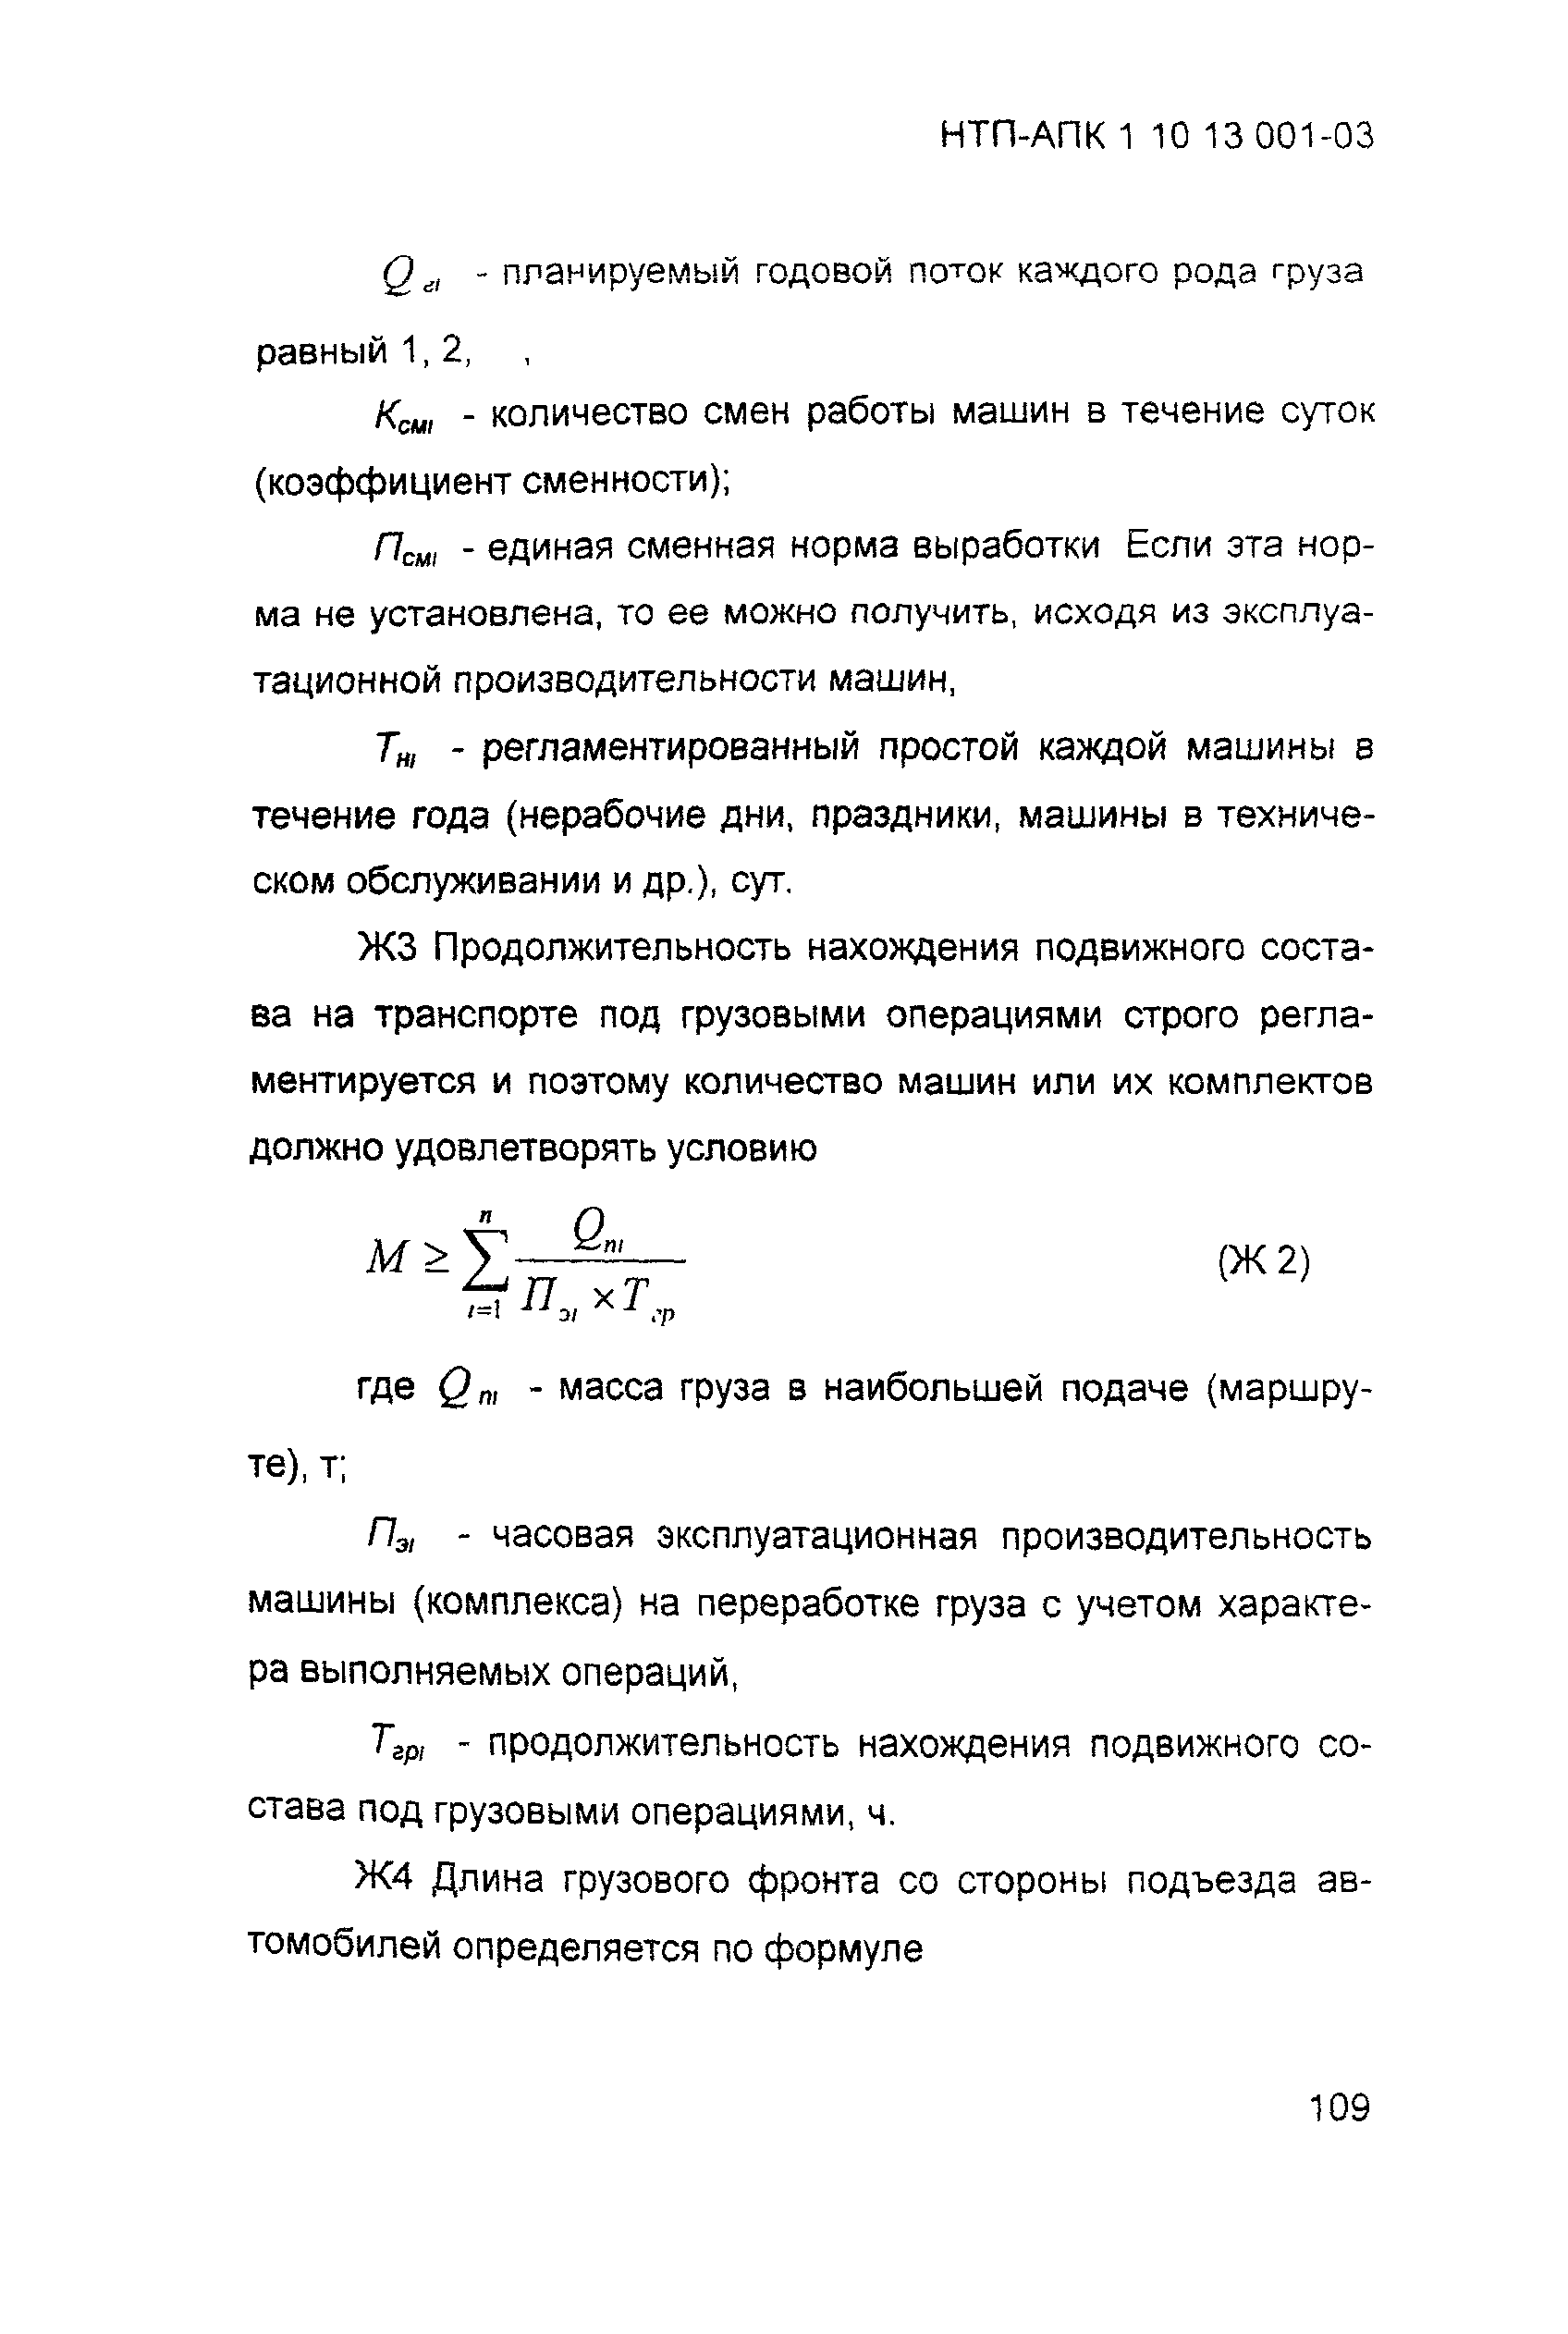 НТП-АПК 1.10.13.001-03